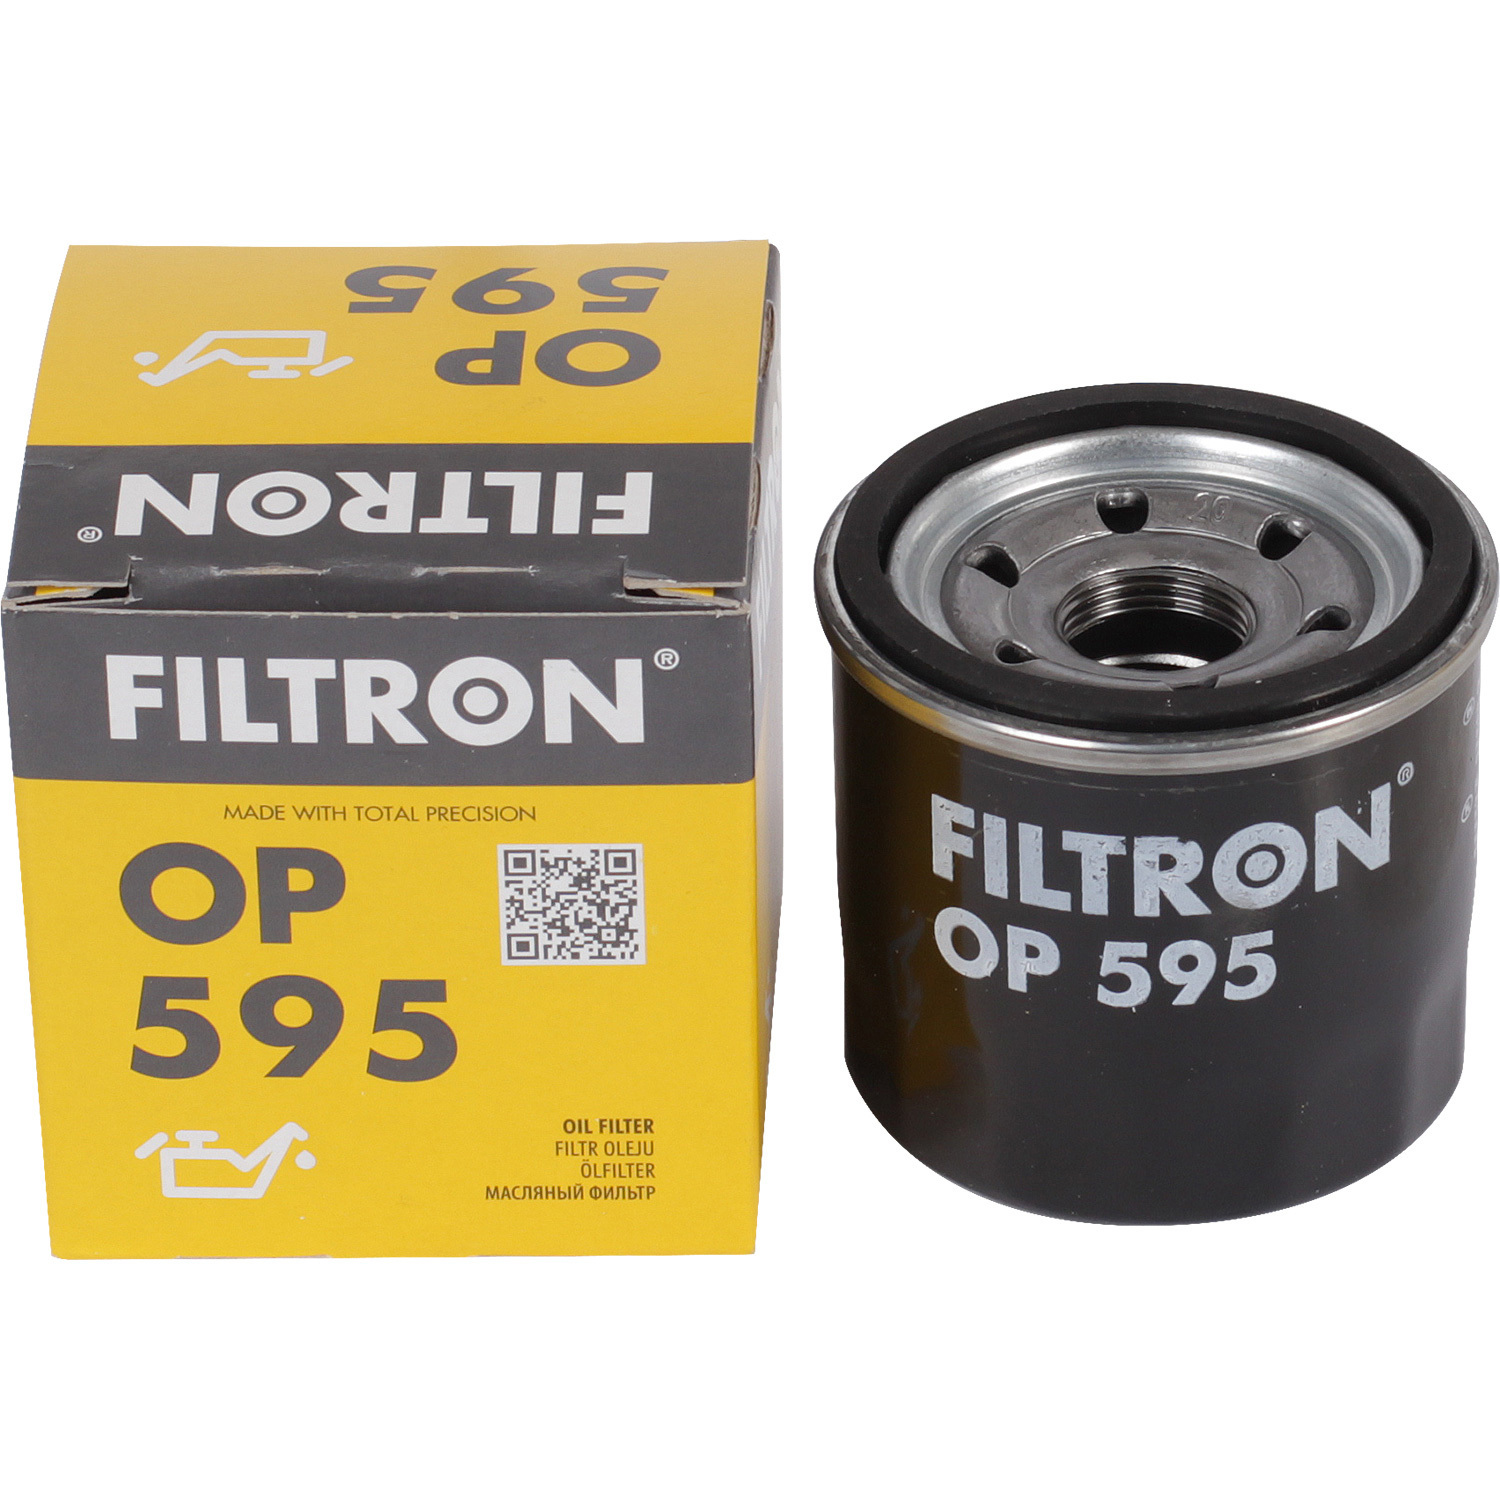 Фильтры Filtron Фильтр масляный Filtron OP595 фильтры filtron фильтр масляный filtron op617